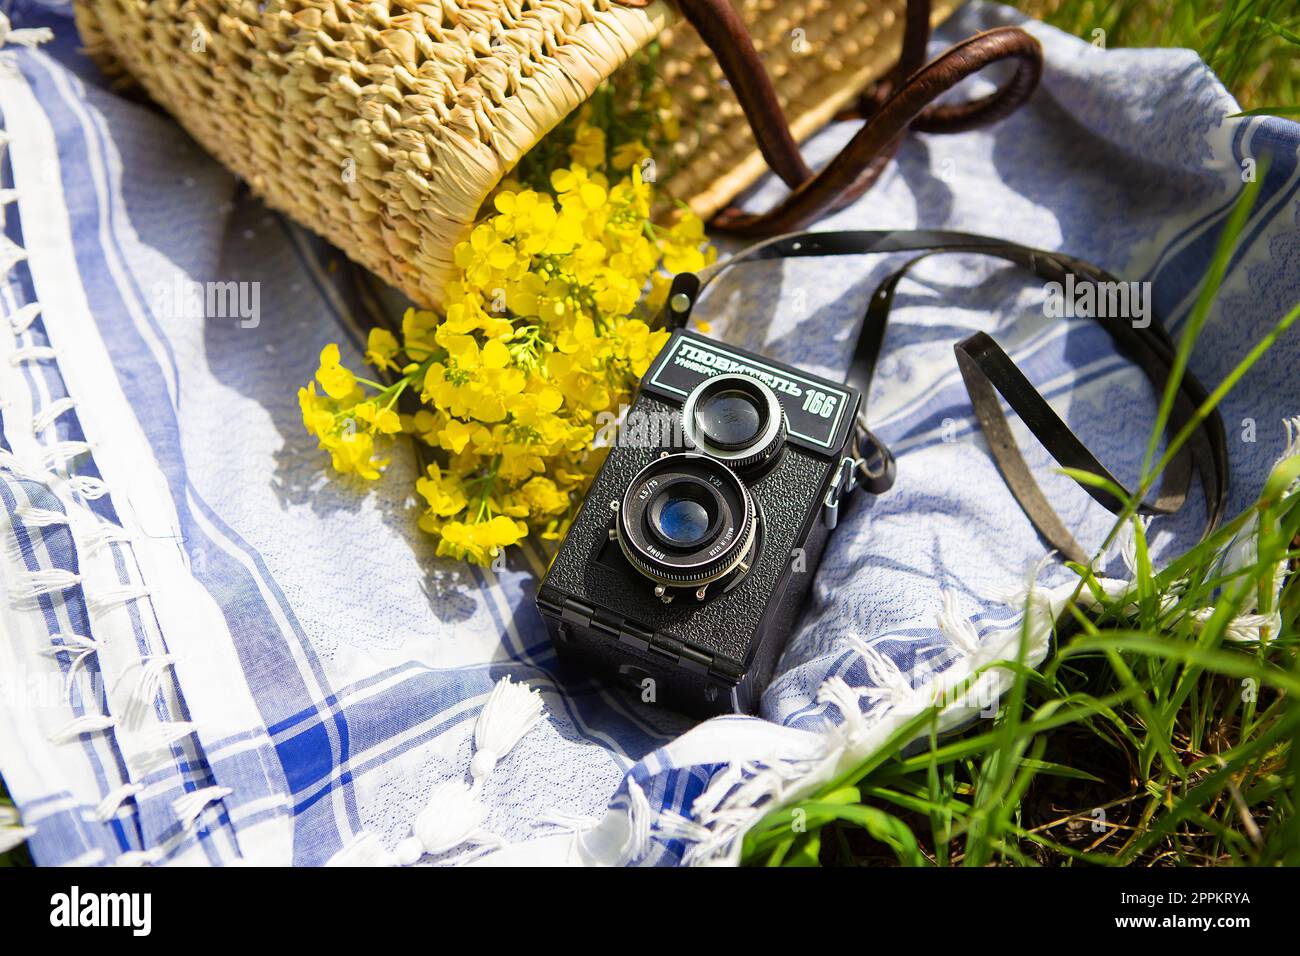 Un panier de pique-nique en paille repose sur une couverture bleue sur de l'herbe verte avec un bouquet de fleurs jaunes. En arrière-plan se trouve une vieille caméra avec le nom Lover 166 écrit dessus. Banque D'Images